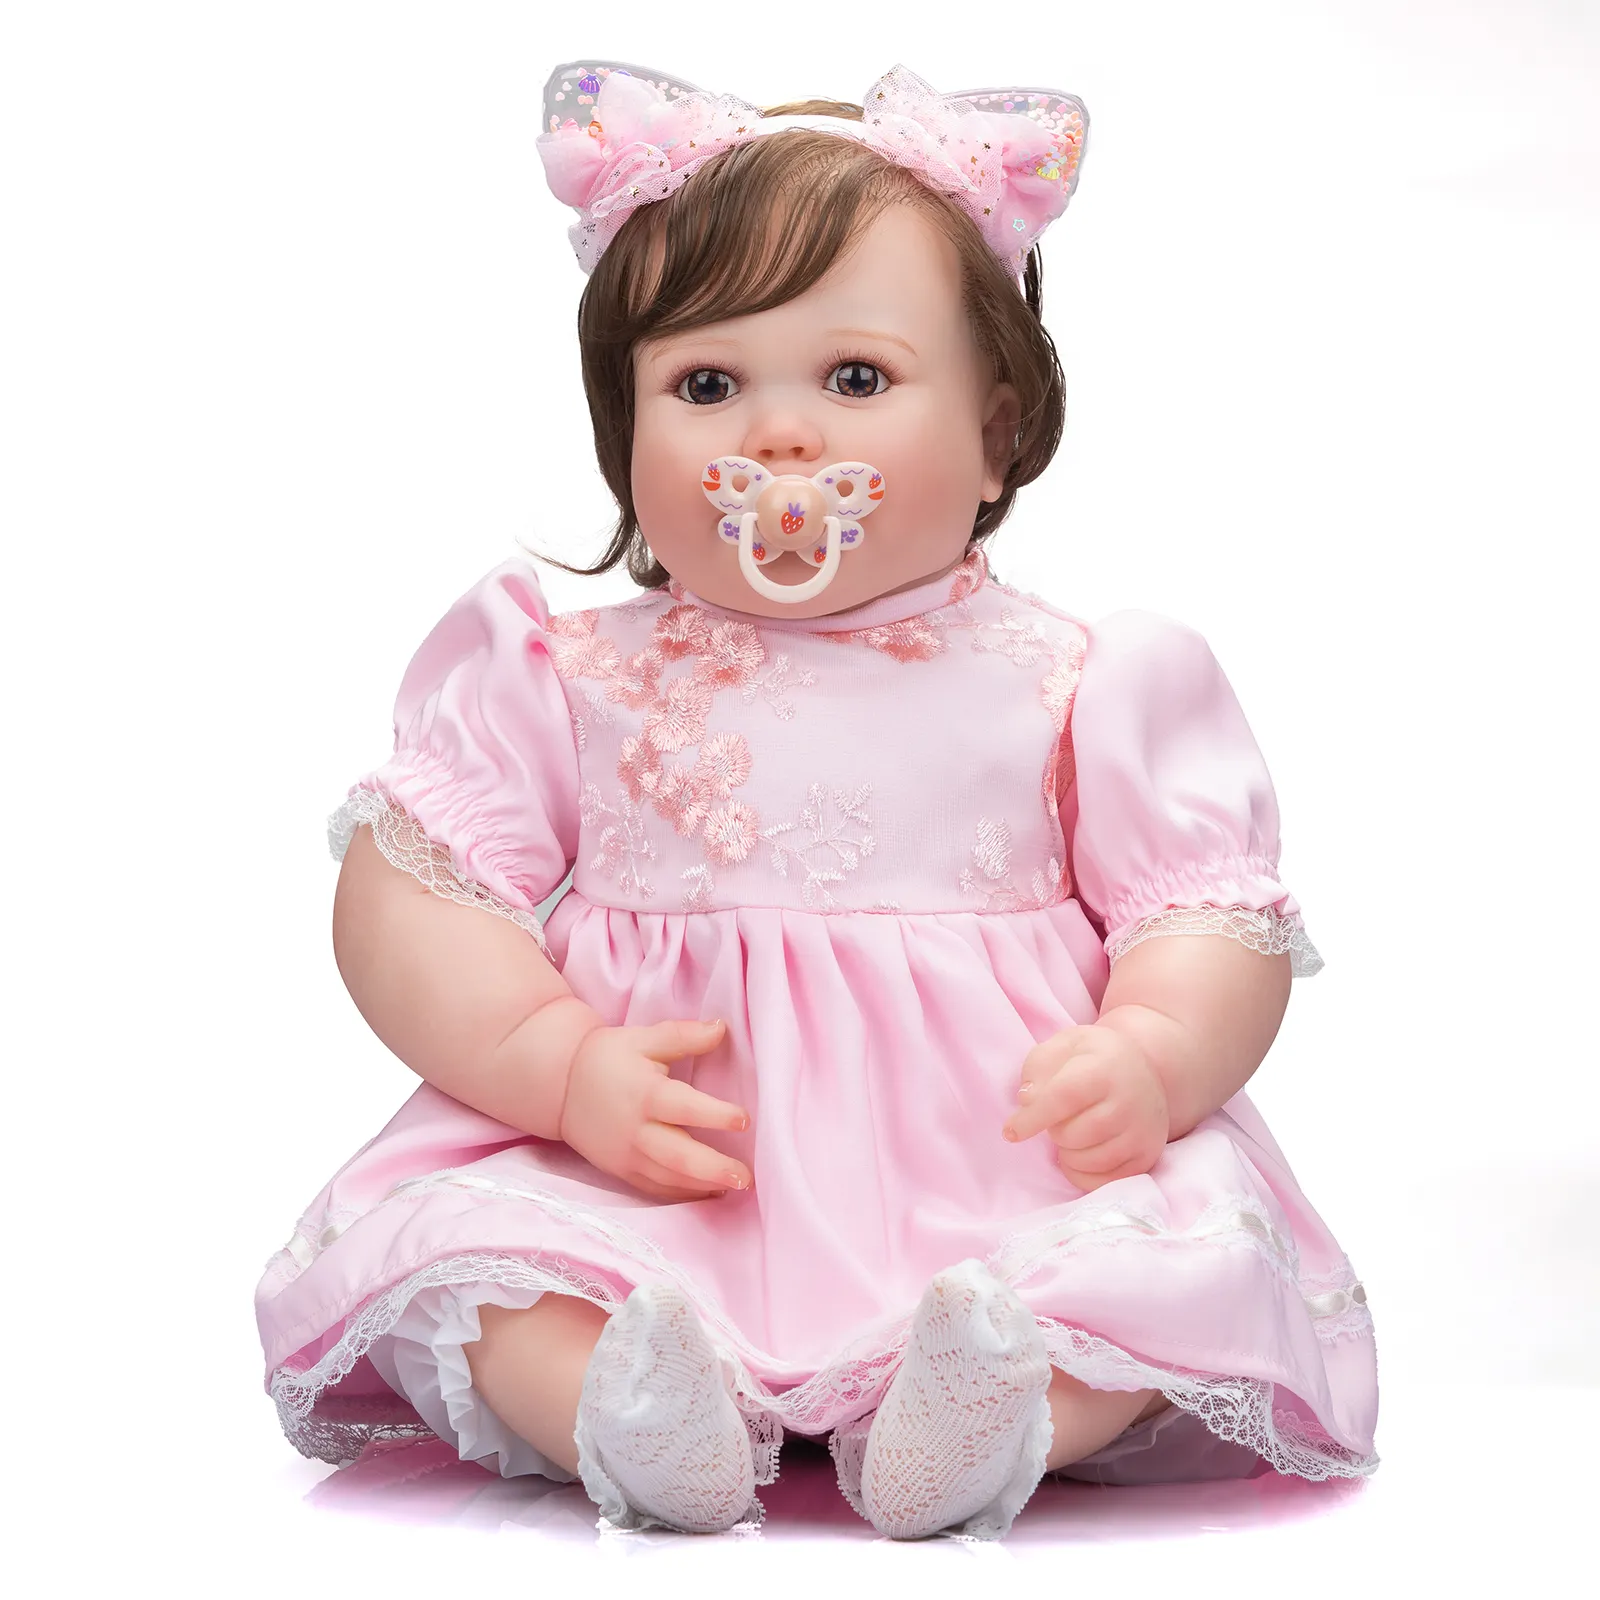 Nieuwe 60Cm Enorme Pop Echte Baby Grootte Reborn Prinses Meisje Levensechte 3D Schilderen Met Zichtbare Aderen Collectible Poppen Voor kids